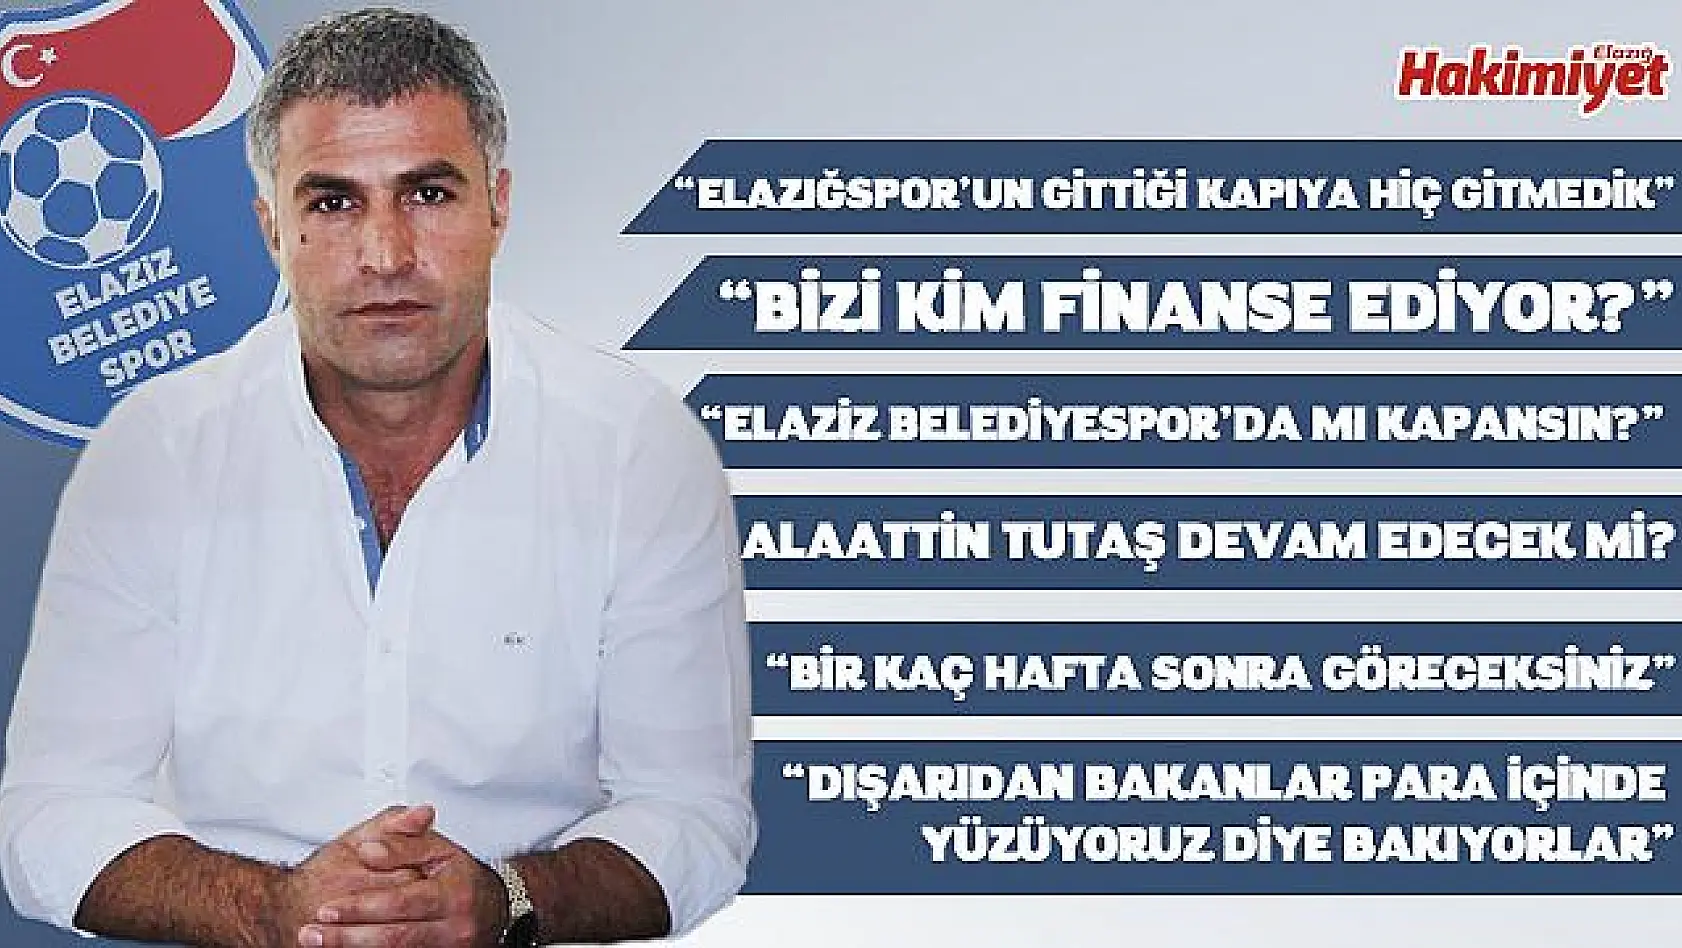 'Kimse Elaziz Belediyespor üzerinden oyun oynayamaz!'